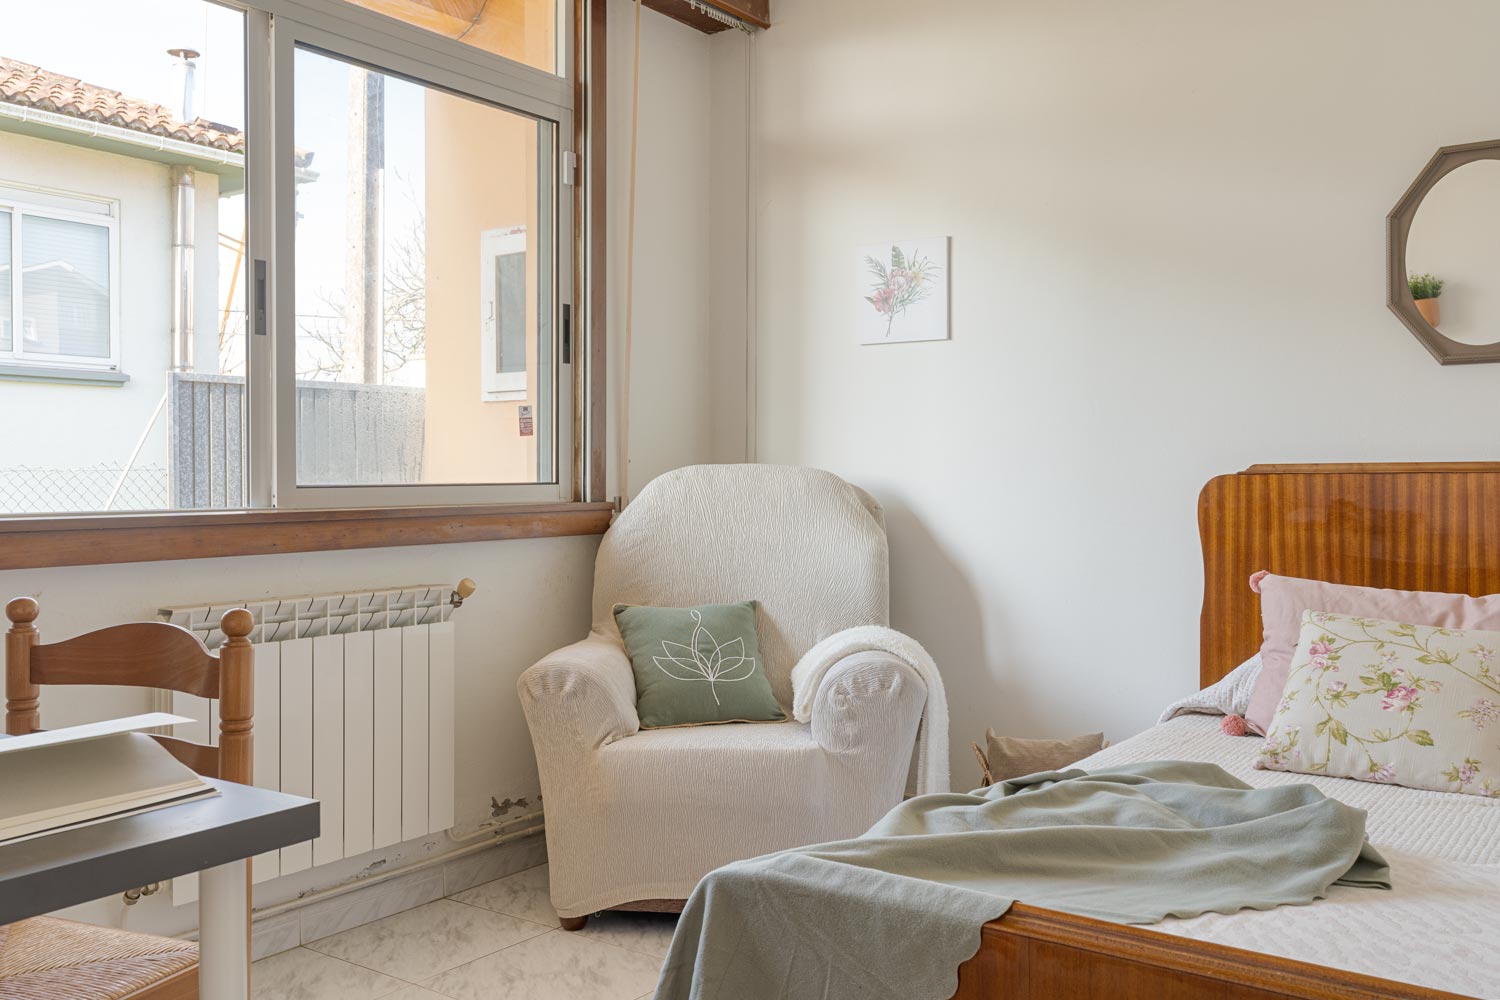 Habitación con cama sencilla, sillón cubierto con funda blanca y ventana que deja entrar luz natural.